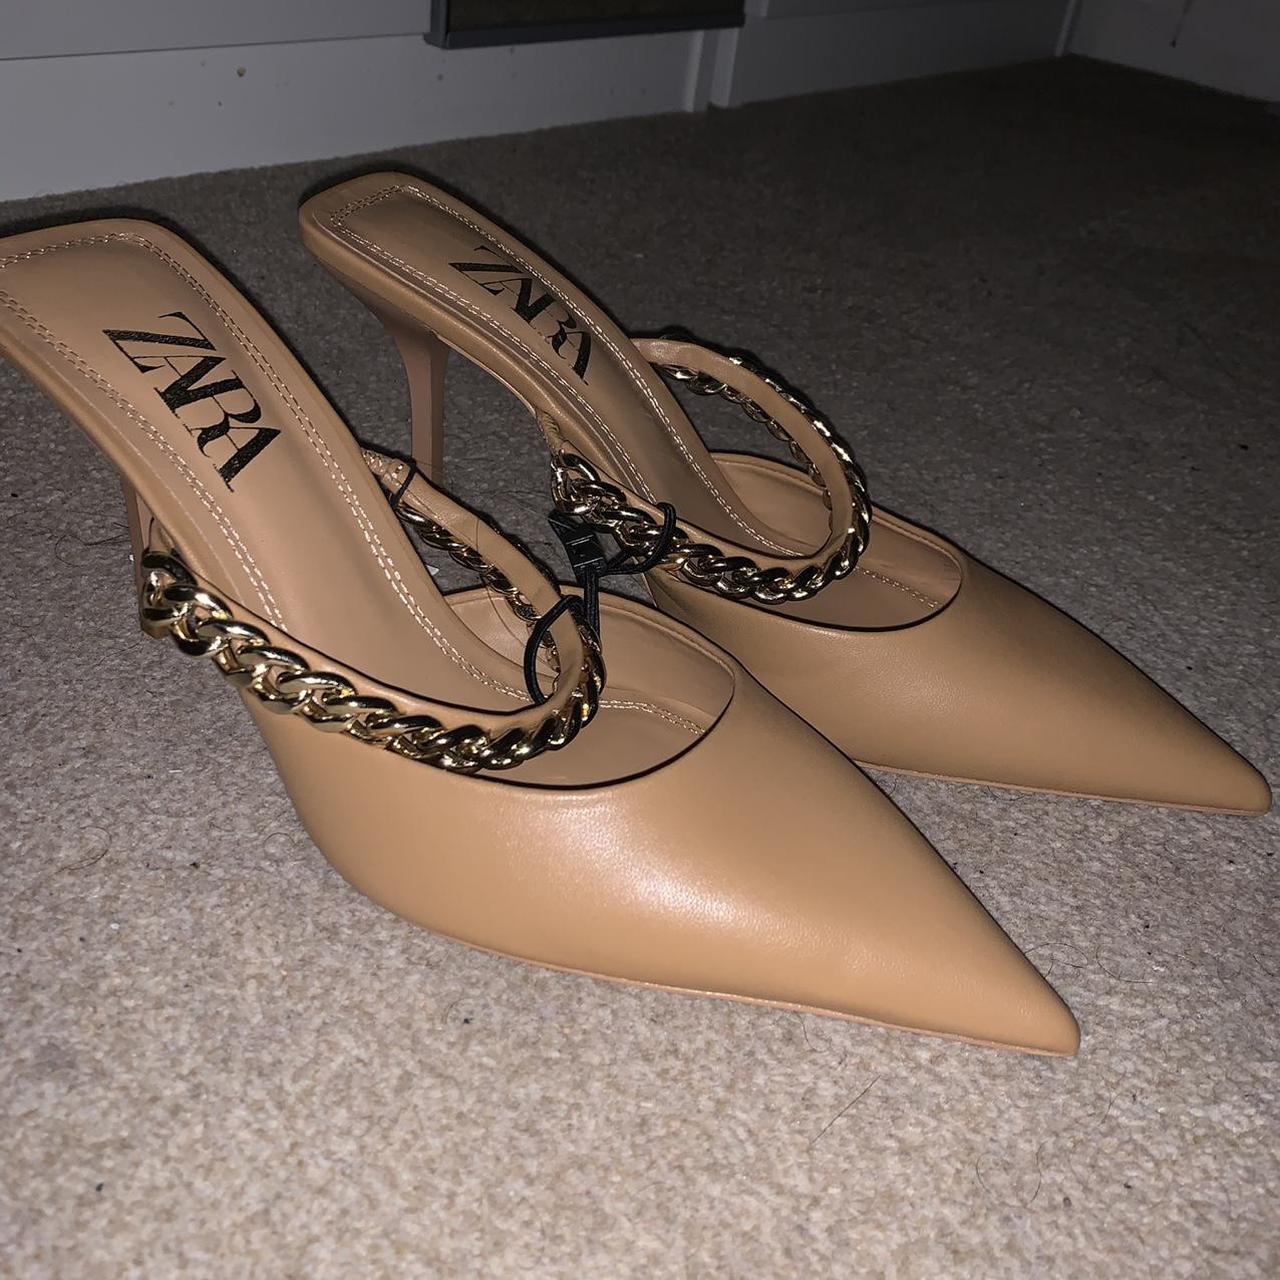 Product Image 1 - Zara nude mule heels
Size: UK